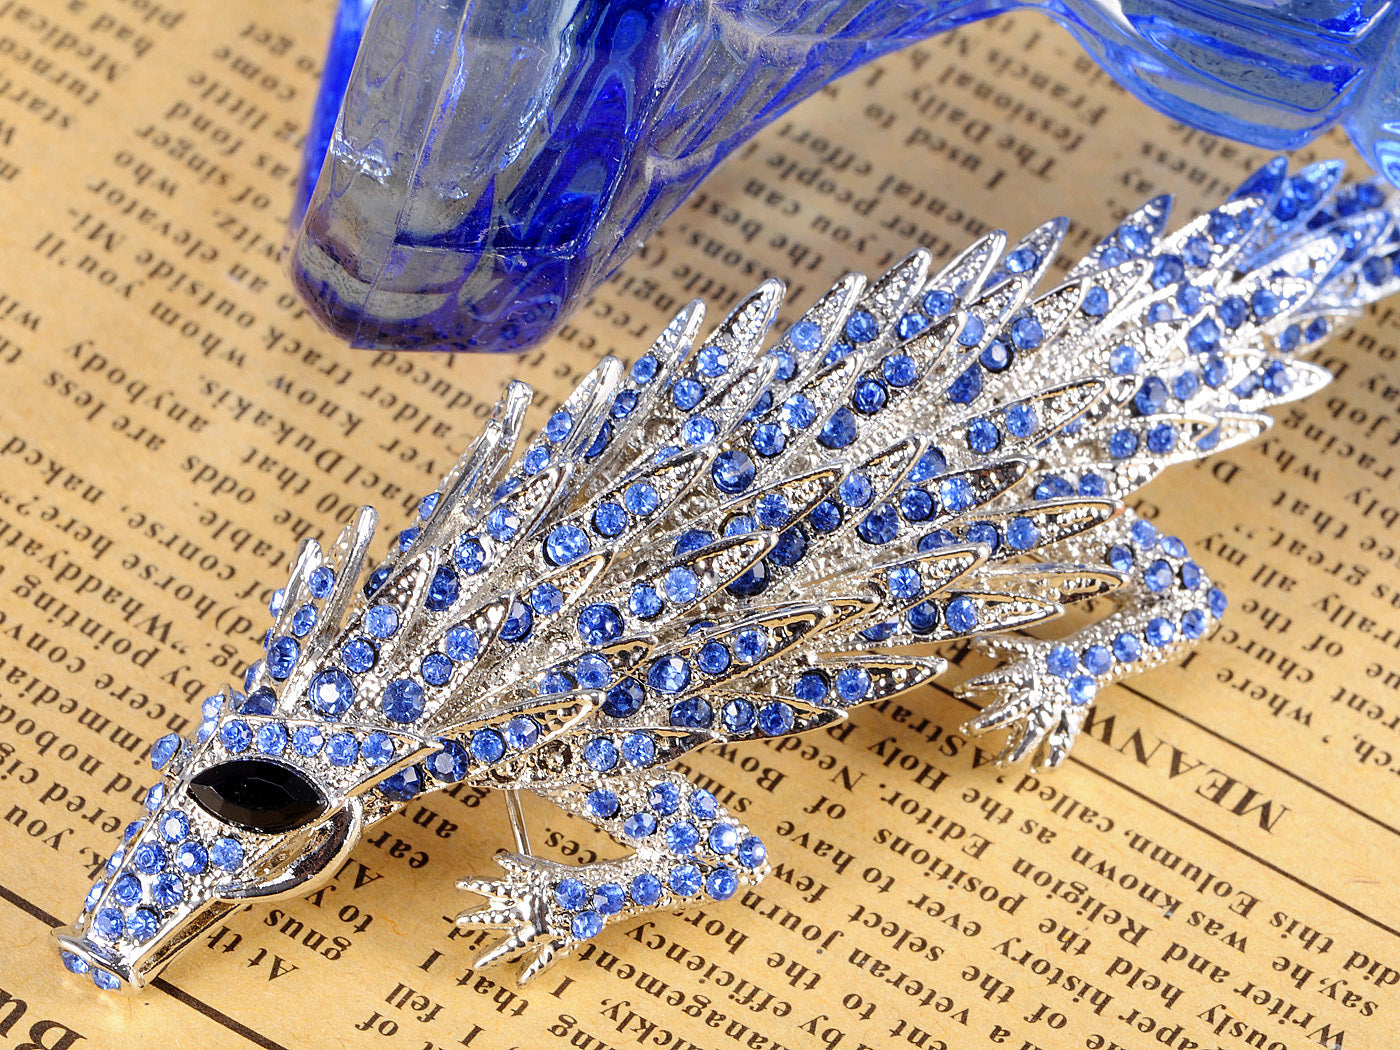 Dangerous Blue Crocodile Jewelry Pin Brooch